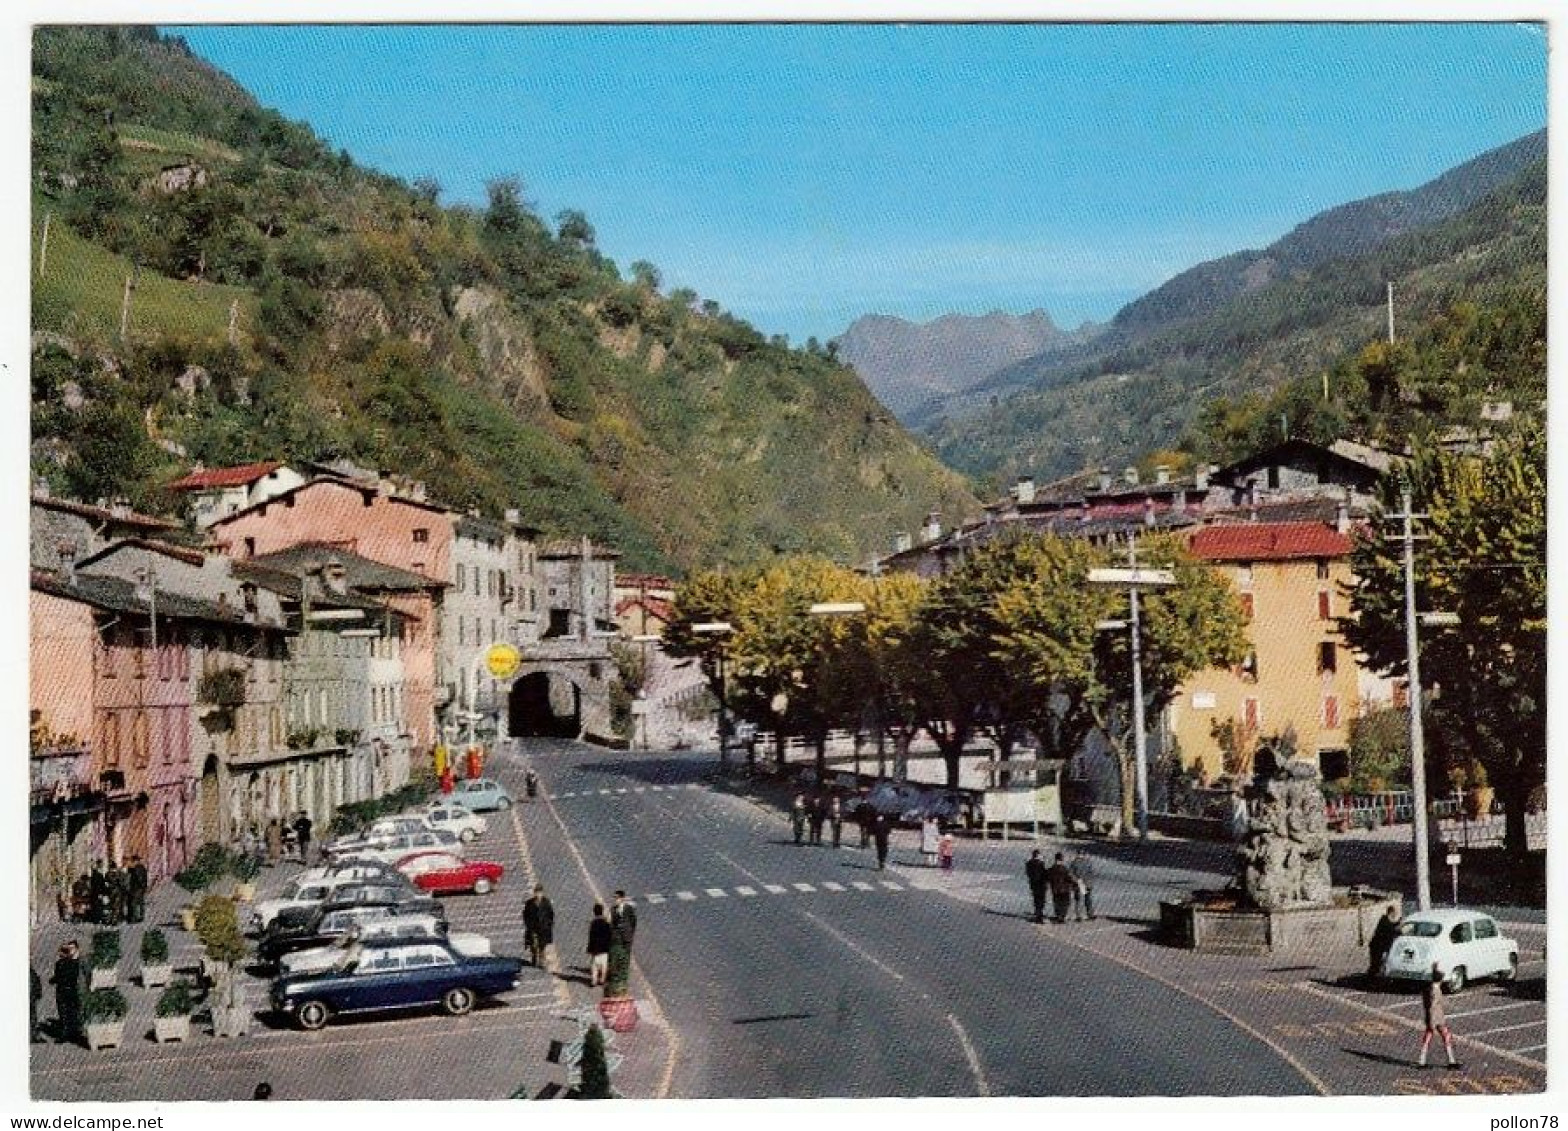 EDOLO - BRESCIA - 1968 - AUTOMOBILI - CARS - Brescia